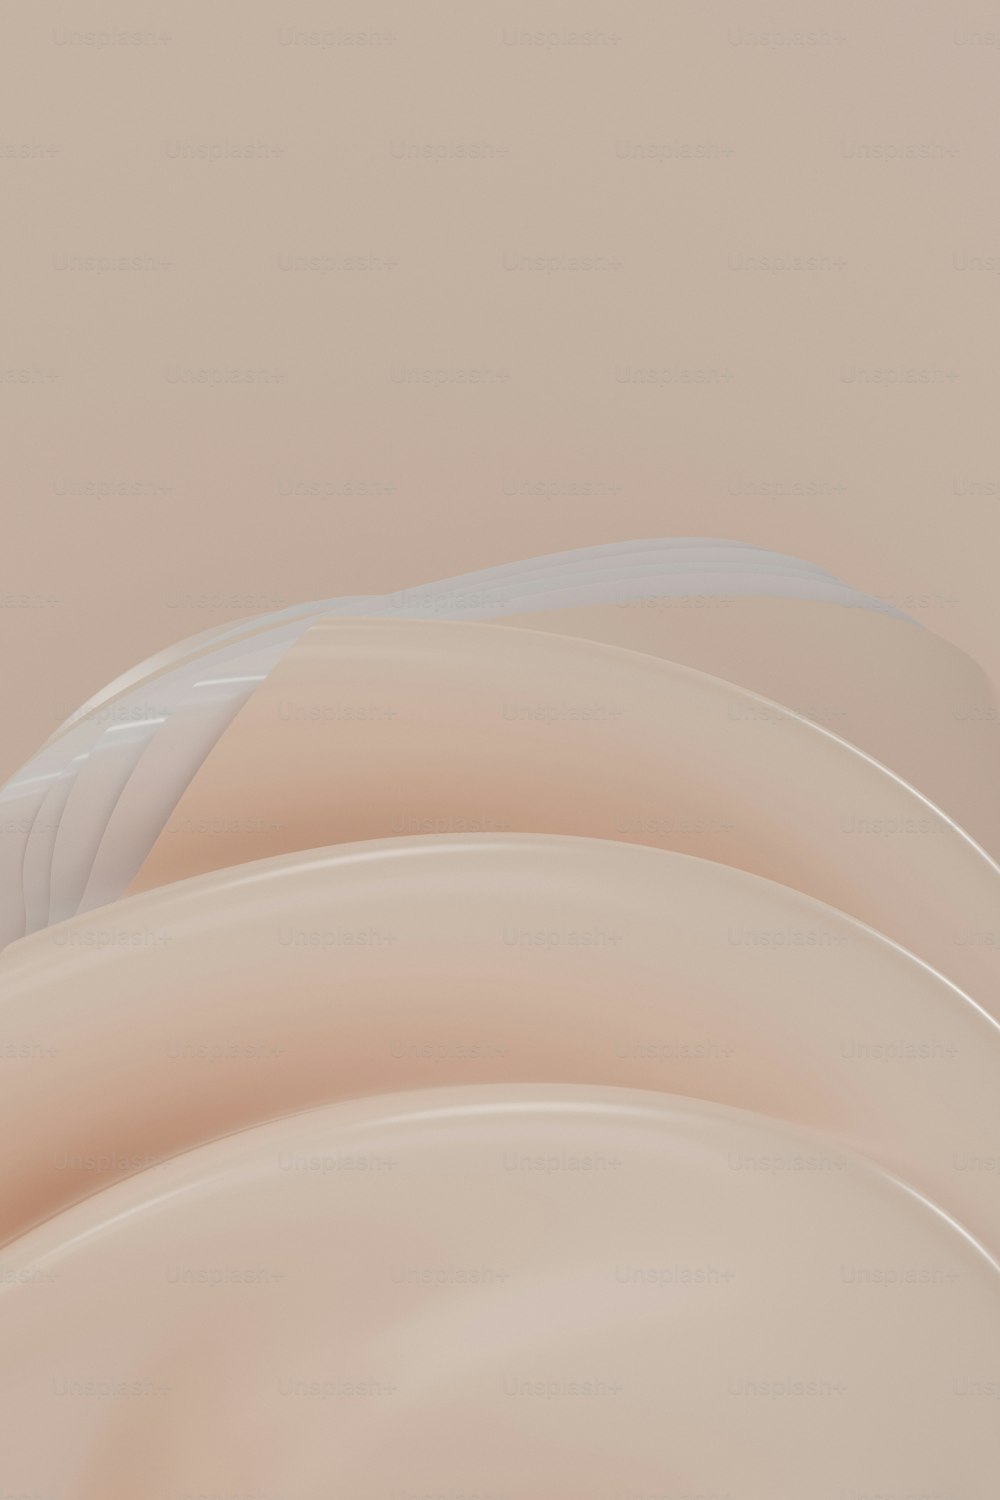 Una foto abstracta de un objeto beige curvo